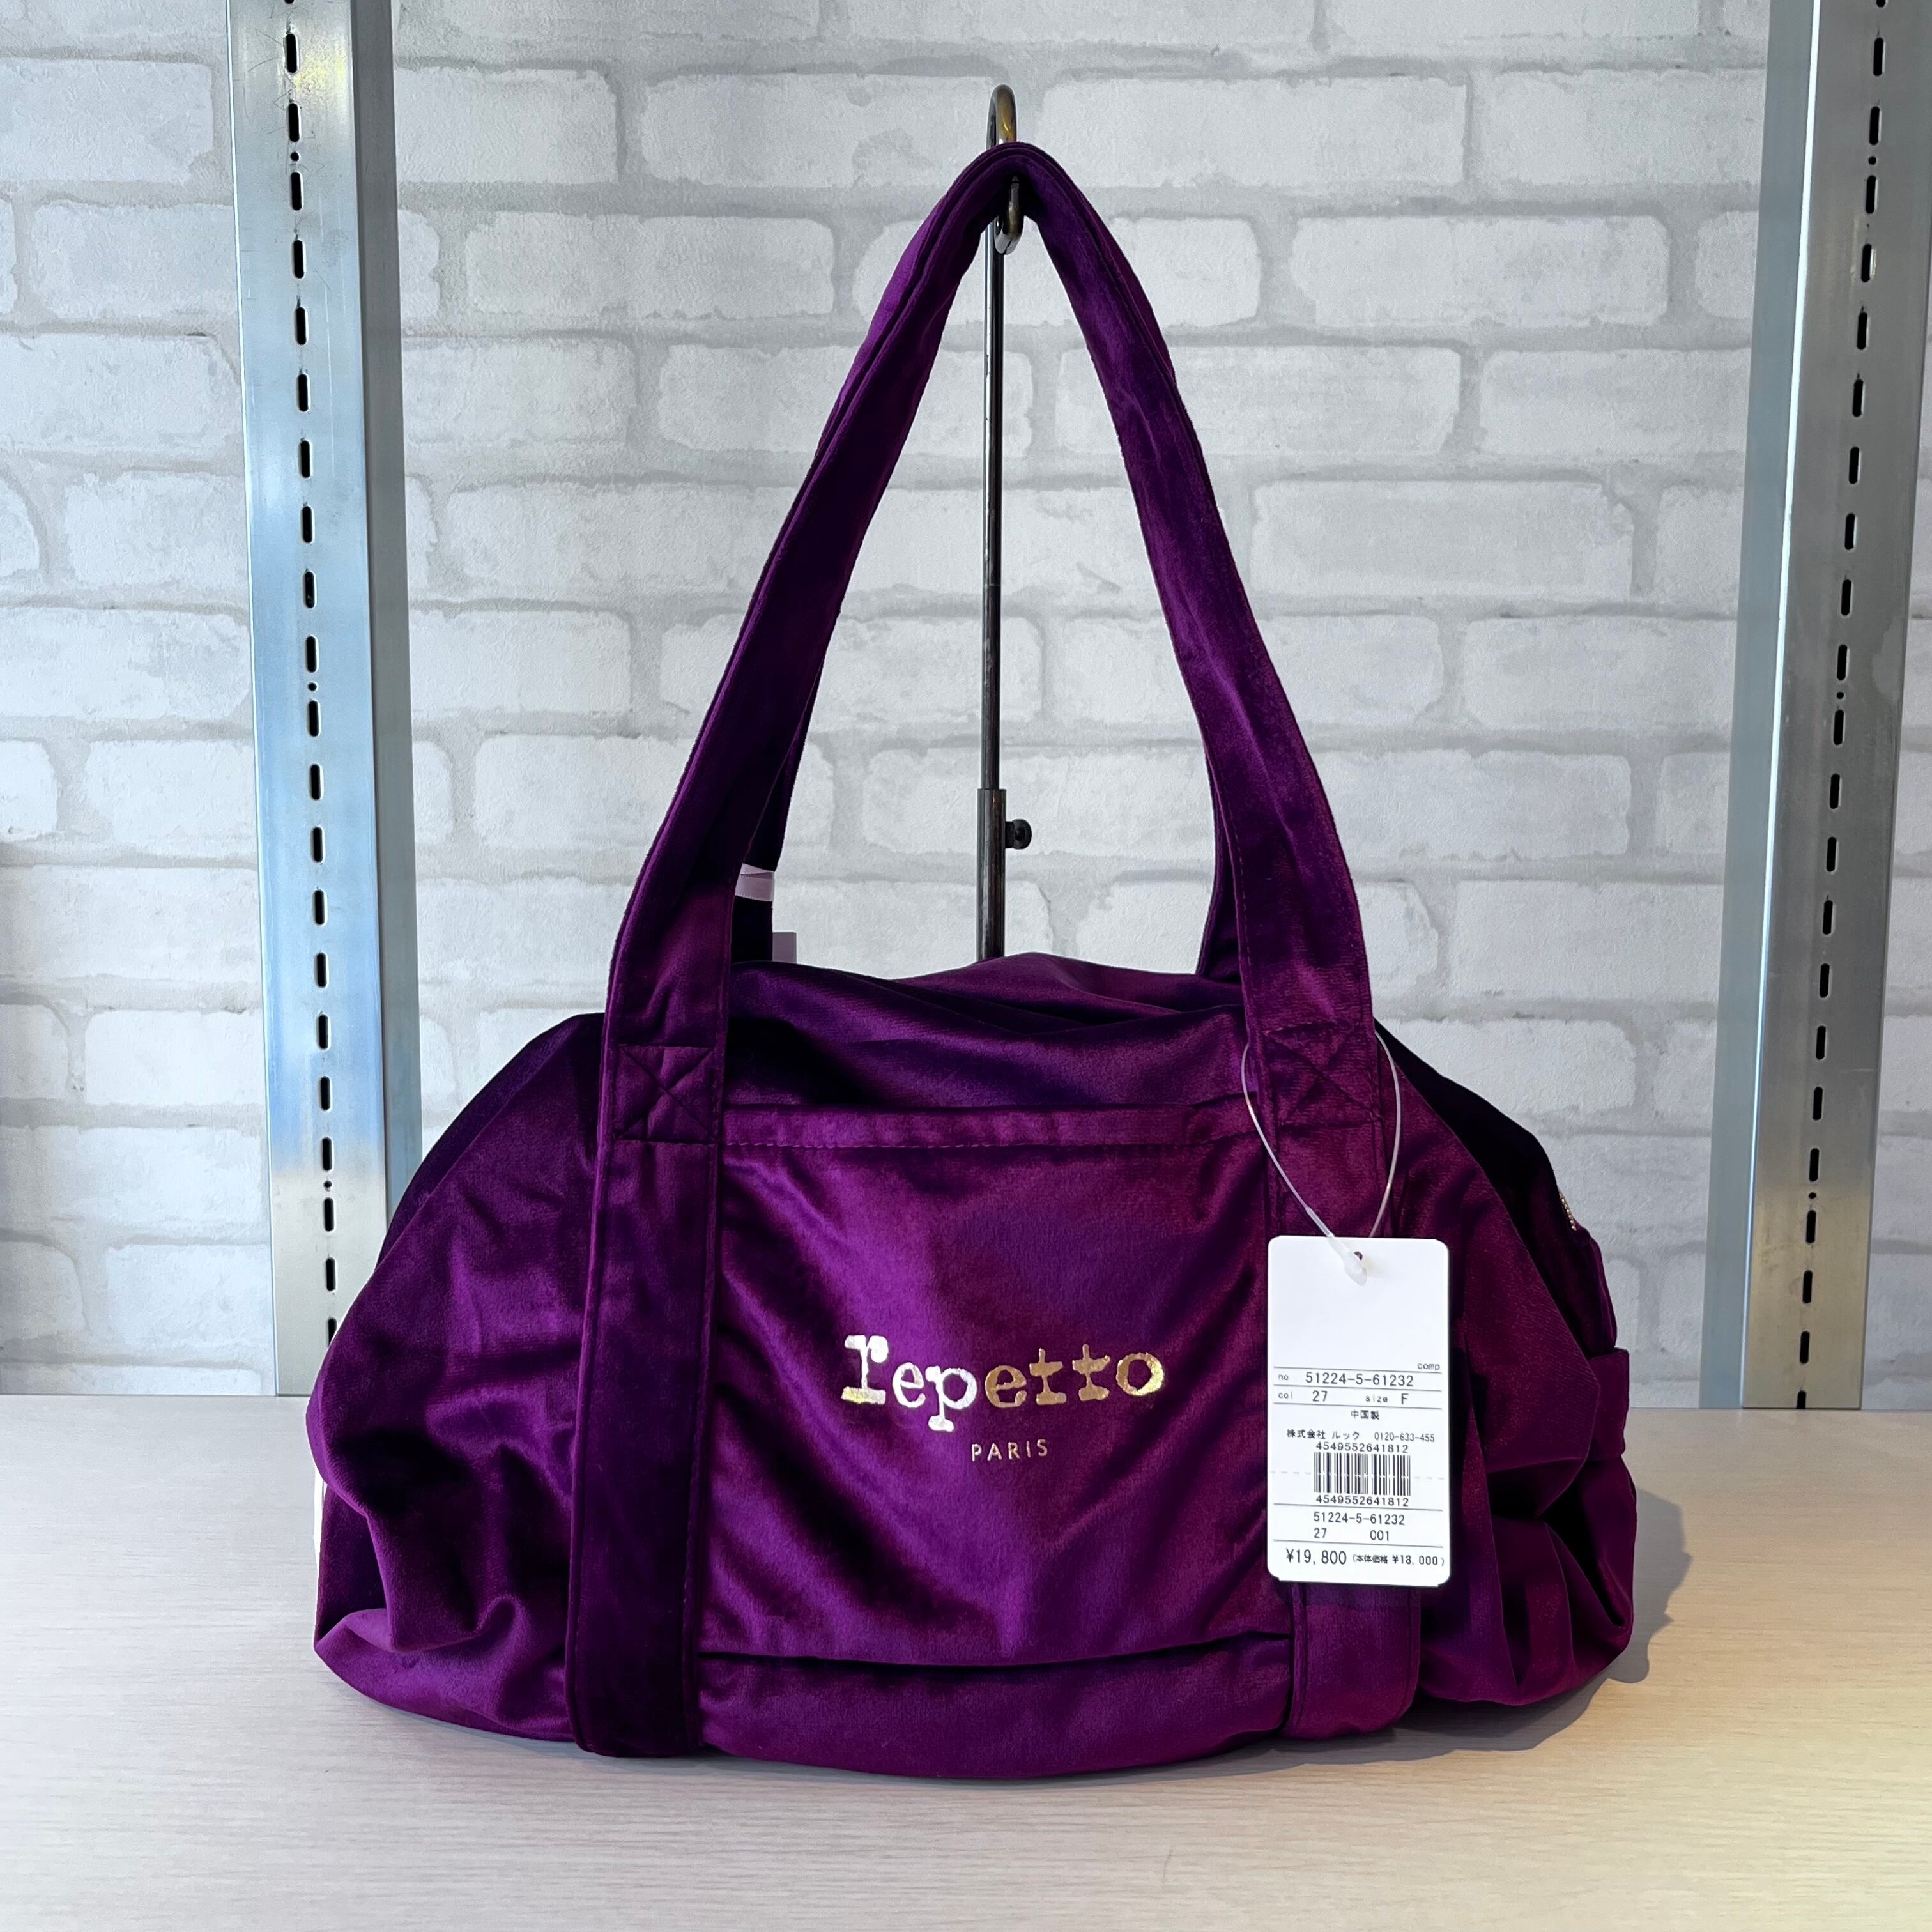 repetto/61232/Duffle bag size M(BORDEAUX)